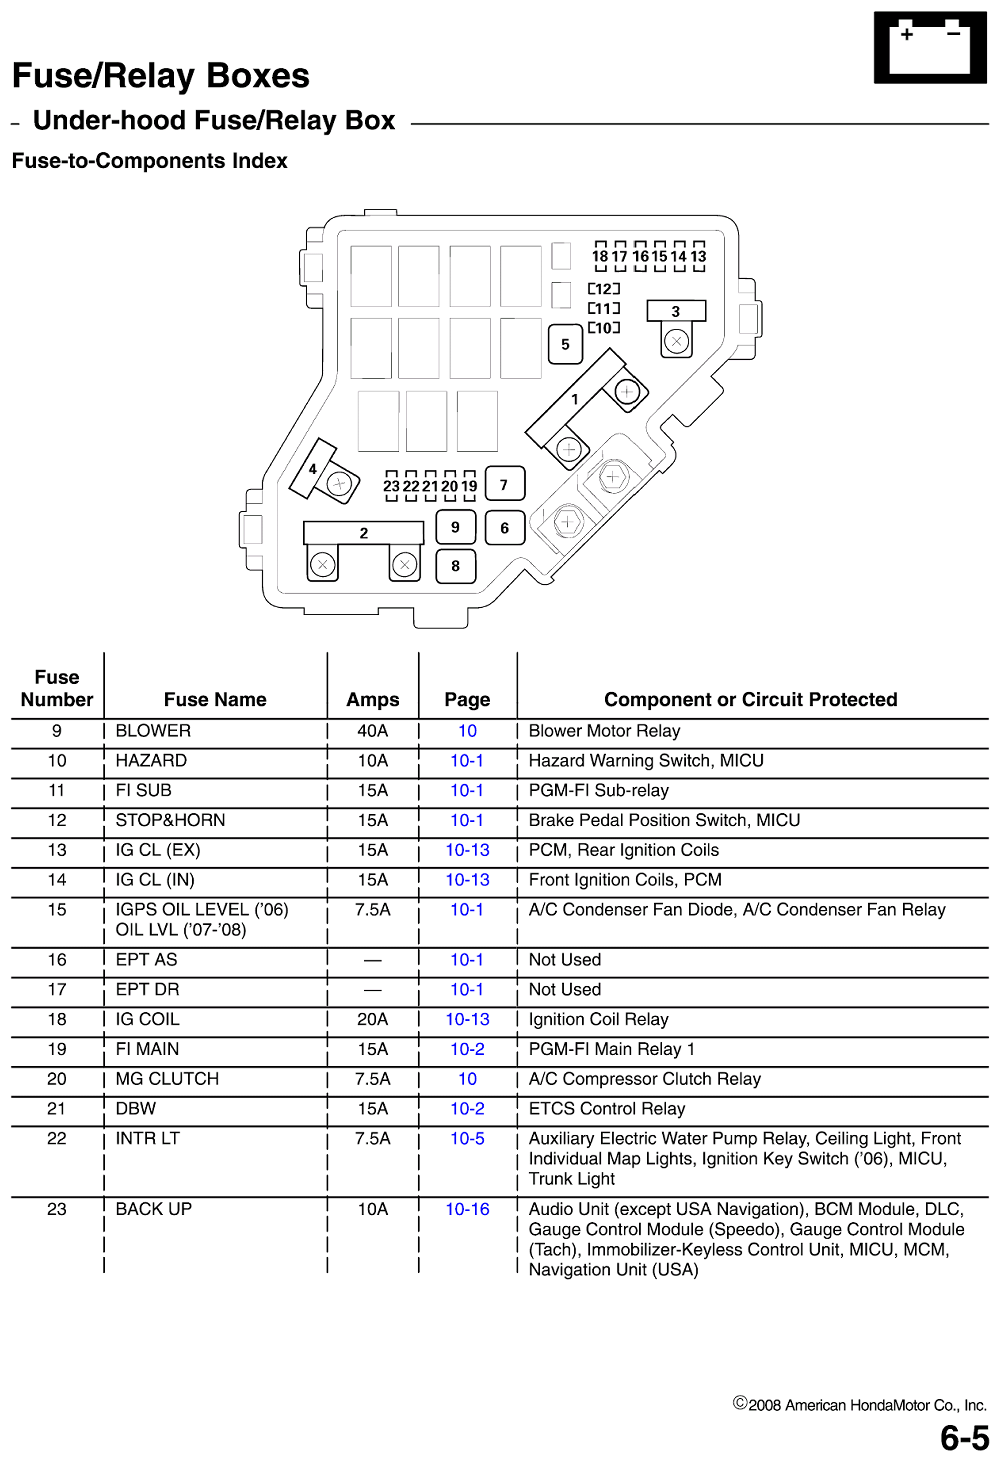 2007 Honda Civic Fuse Box Diagram Wiring Diagrams